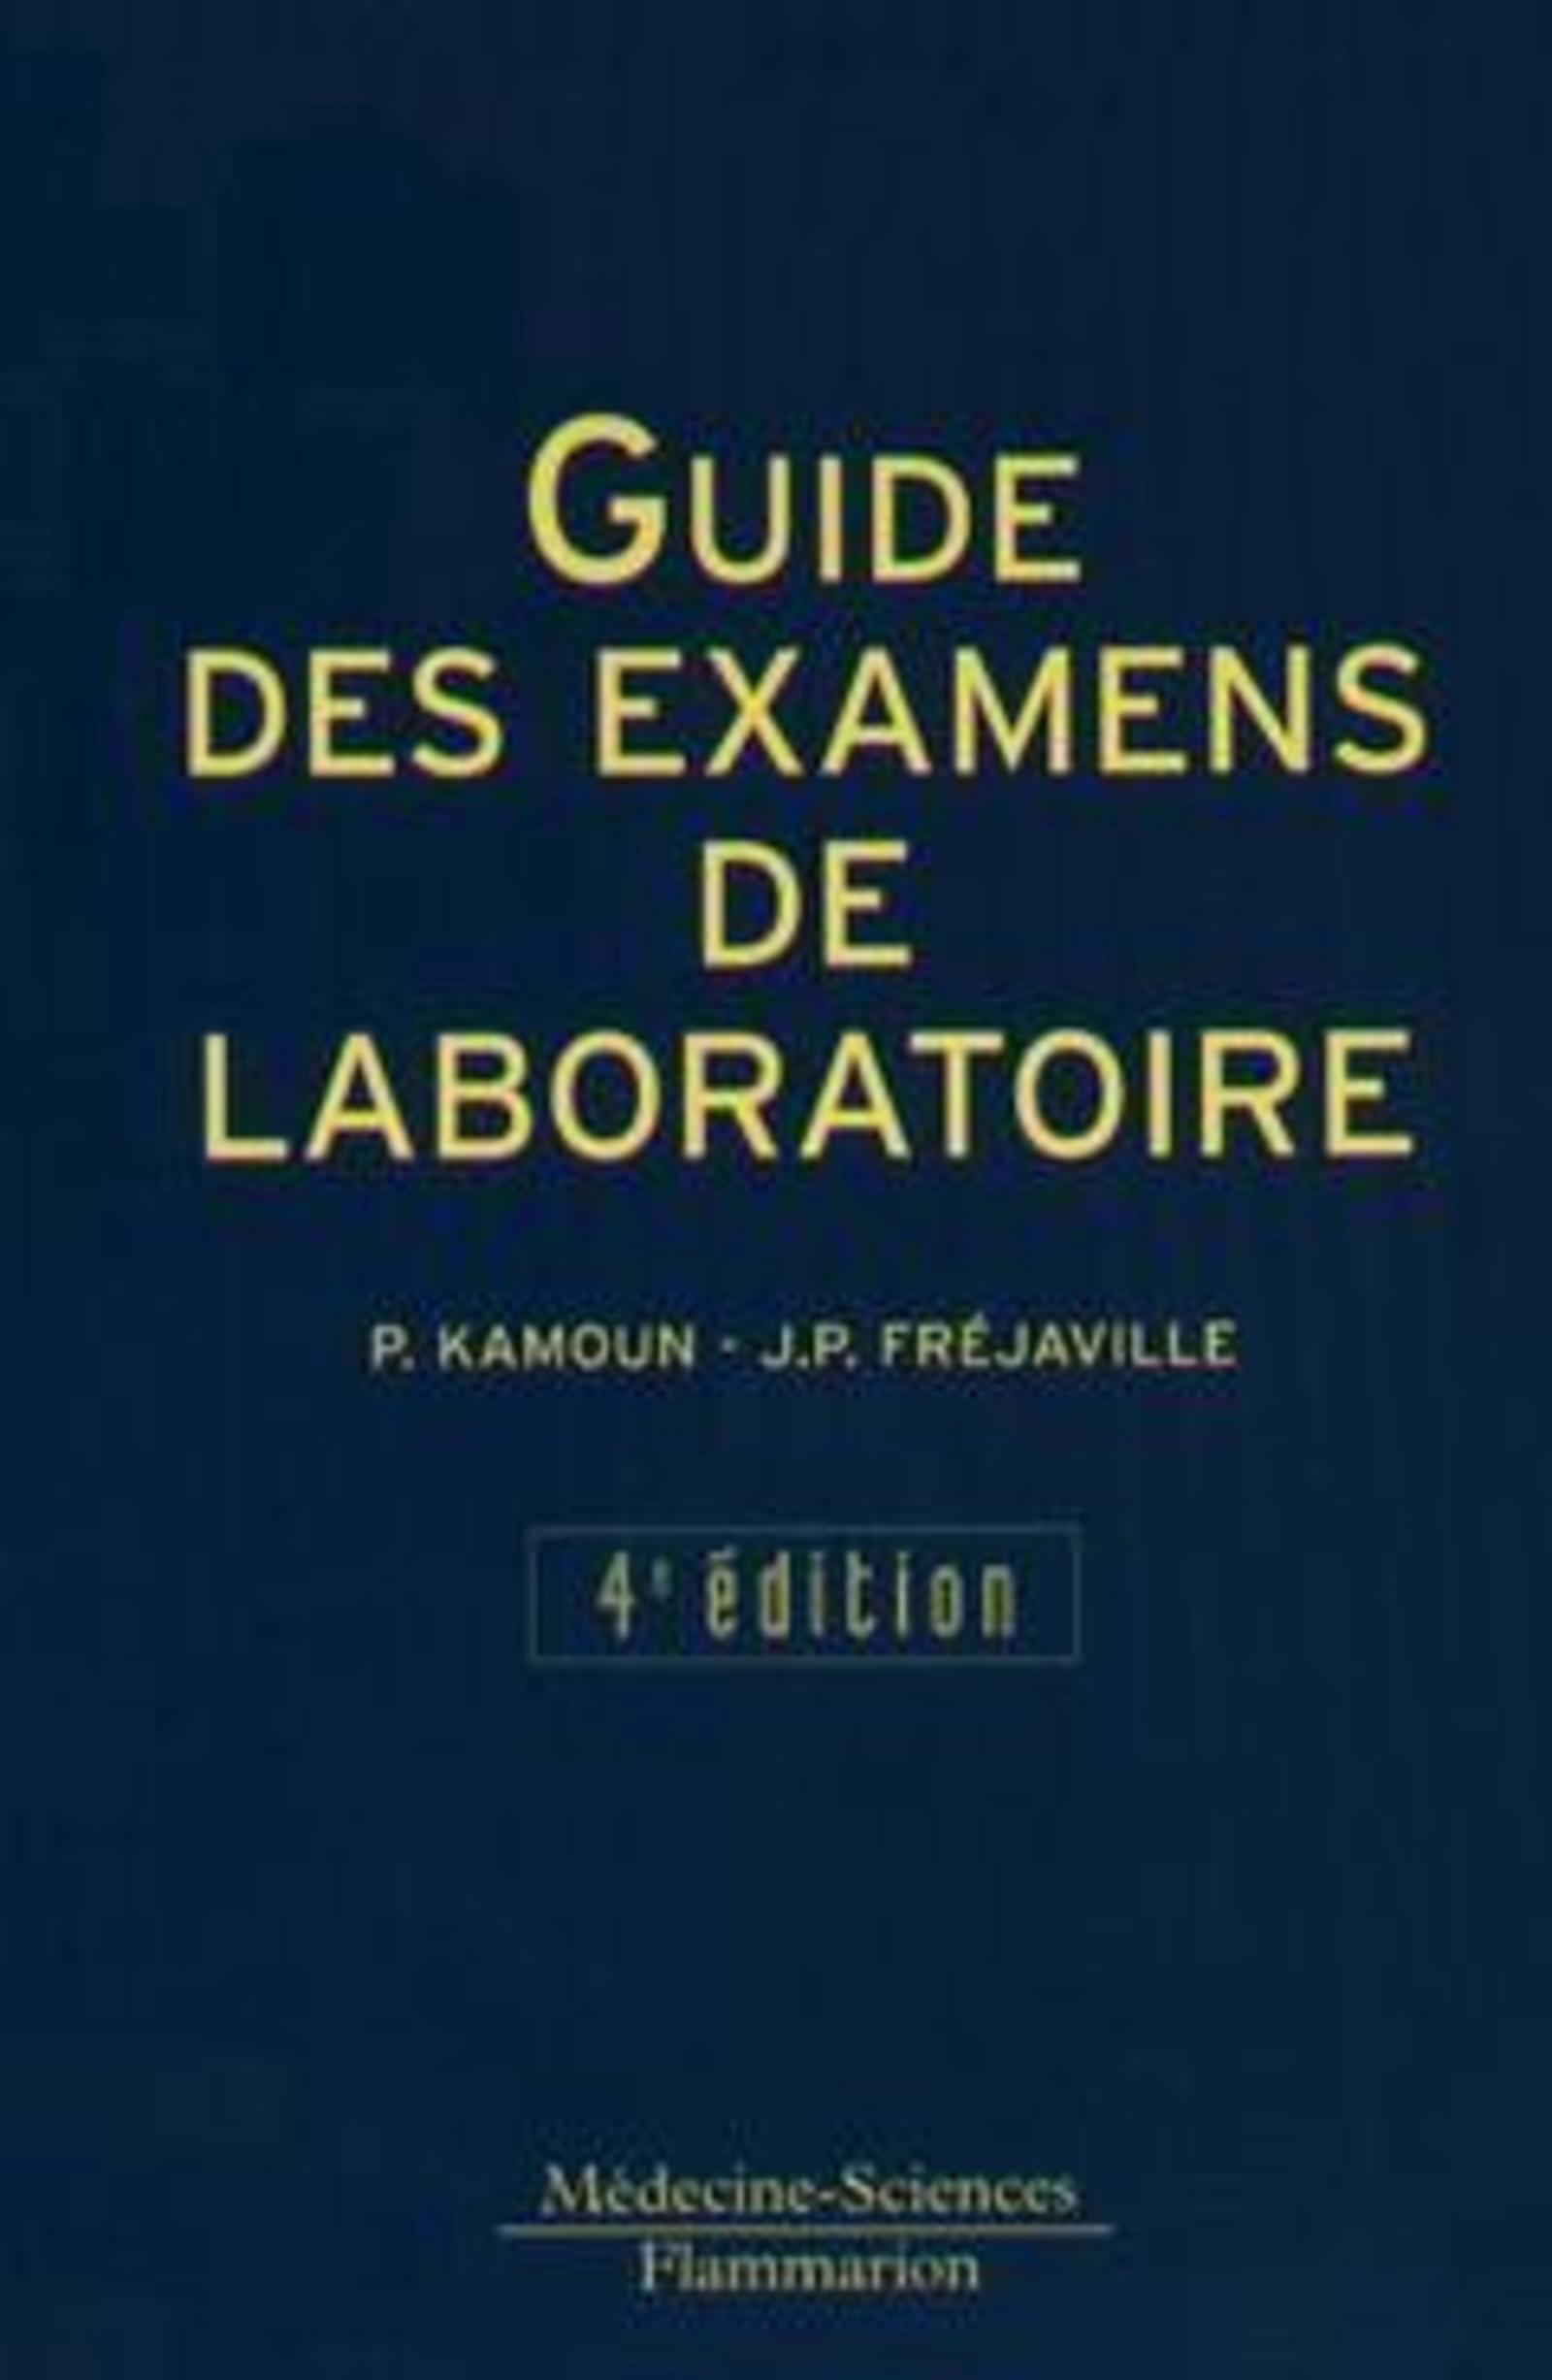 Guide des examens de laboratoire (4° Éd.) (9782257142450-front-cover)